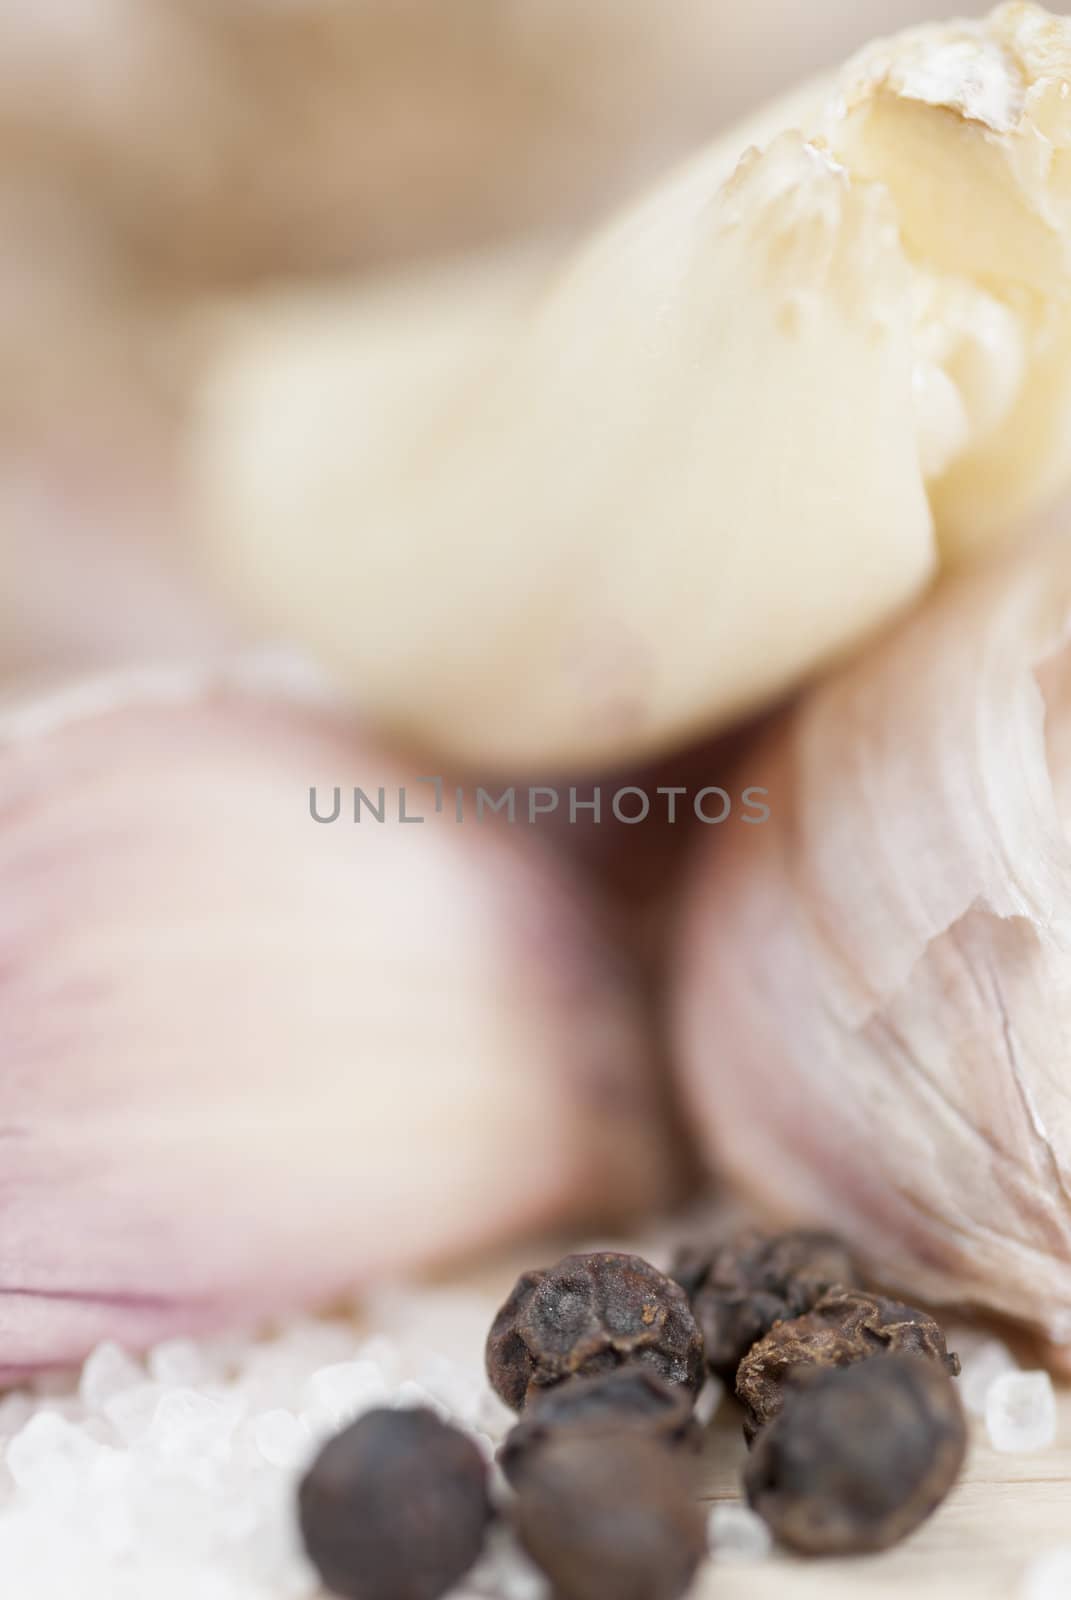 Garlic cloves, peppercorns & salt on wooden surface.